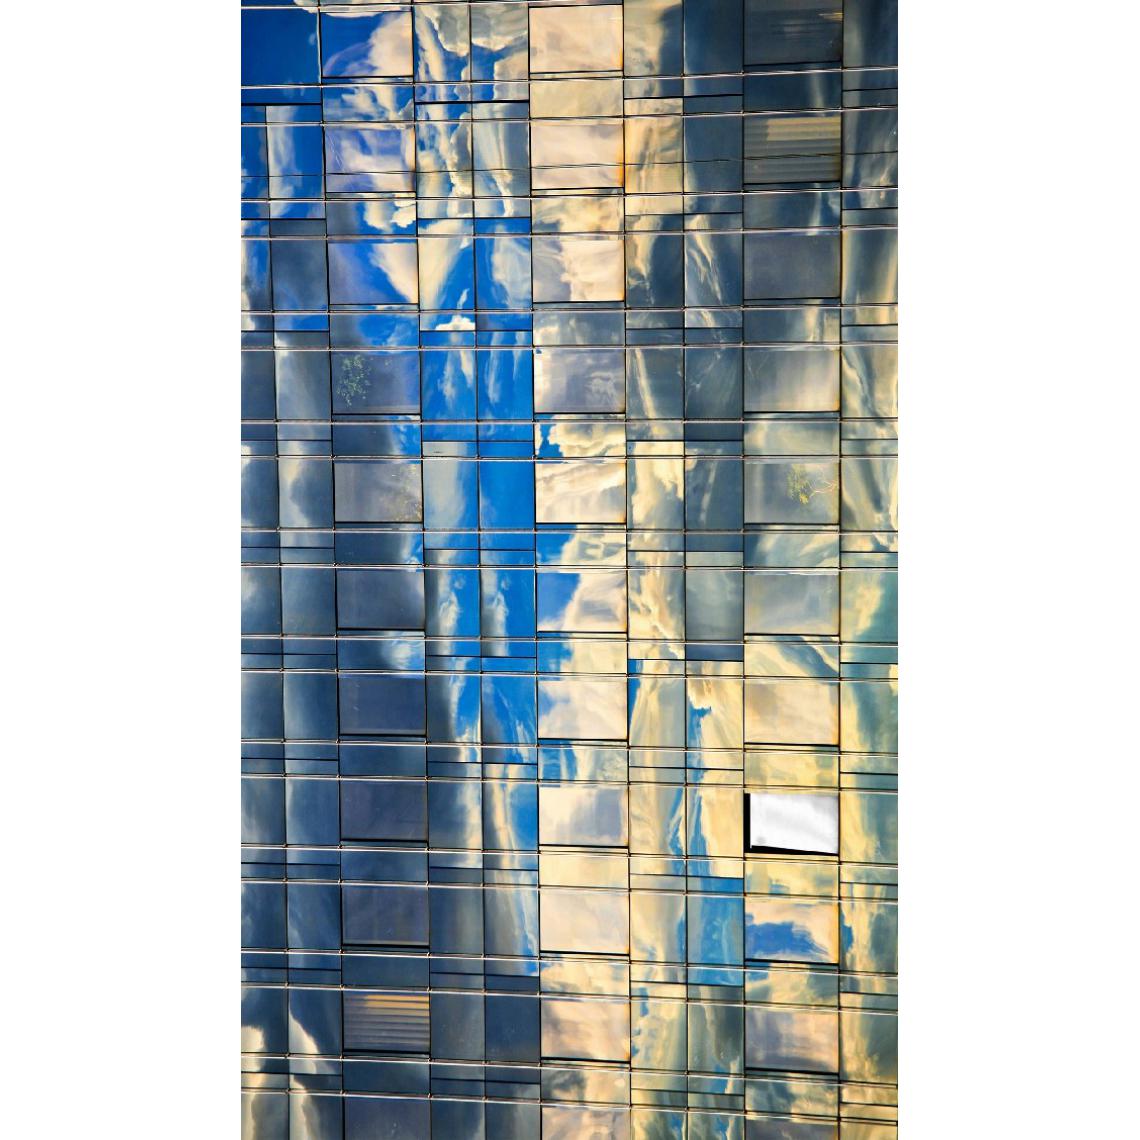 Homemania - HOMEMANIA Tapis Imprimé Glass 1 - Géométrique - Décoration de Maison - Antidérapant - Pour Salon, séjour, chambre à coucher - Multicolore en Polyester, Coton, 100 x 150 cm - Tapis